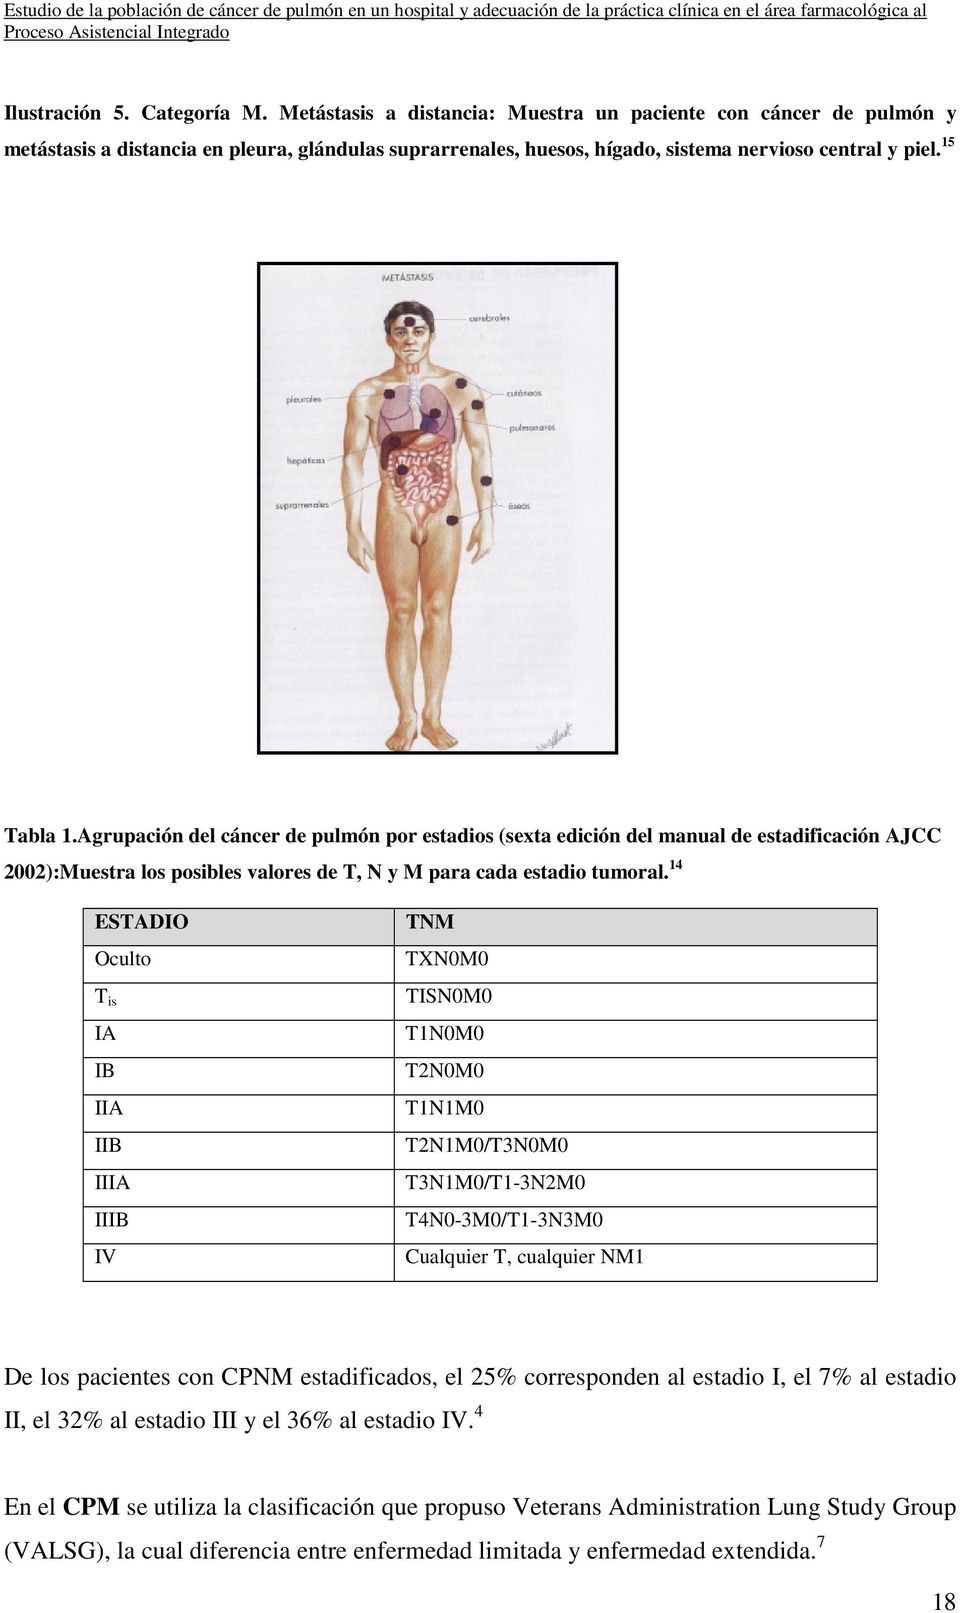 Agrupación del cáncer de pulmón por estadios (sexta edición del manual de estadificación AJCC 2002):Muestra los posibles valores de T, N y M para cada estadio tumoral.